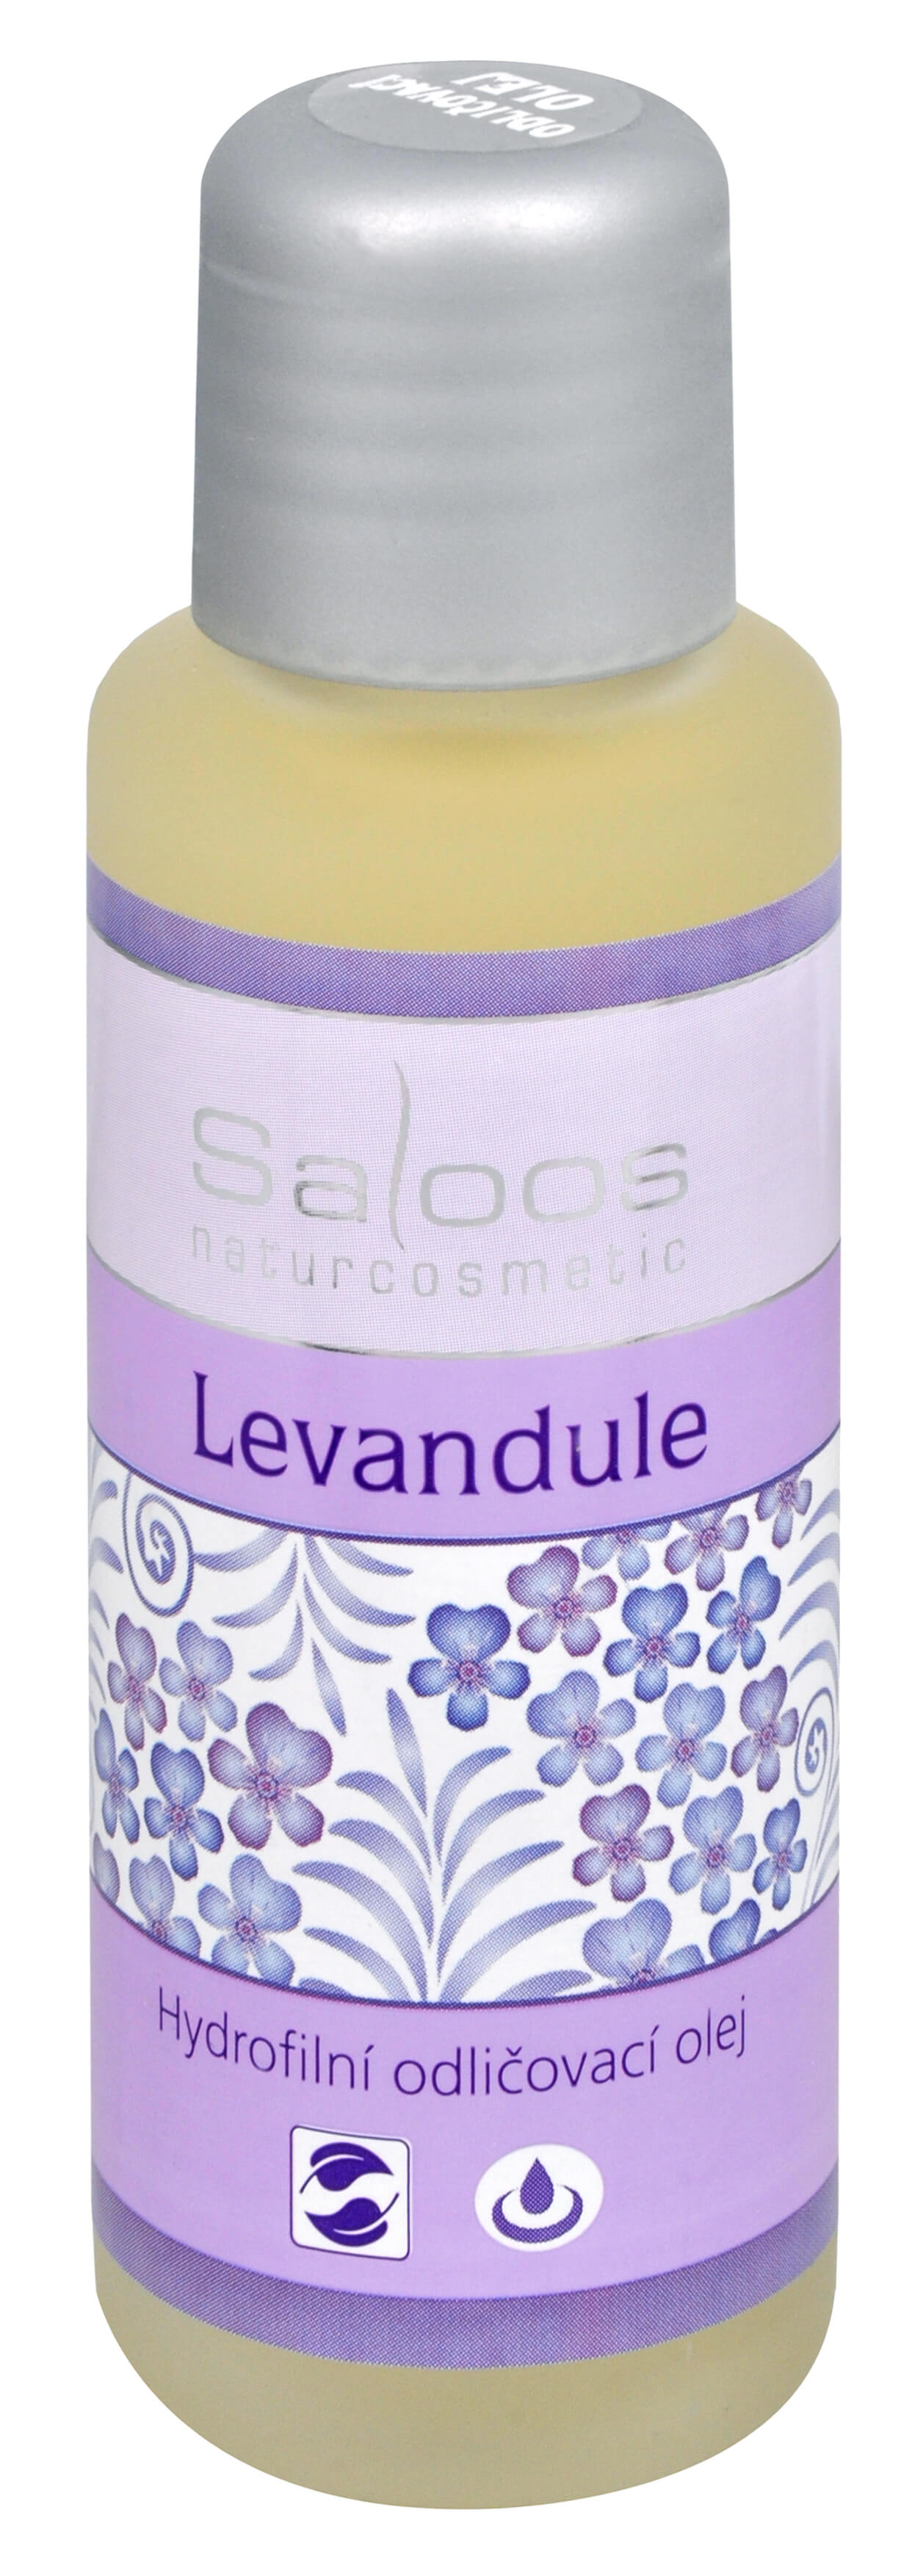 Zobrazit detail výrobku Saloos Hydrofilní odličovací olej - Levandule 500 ml